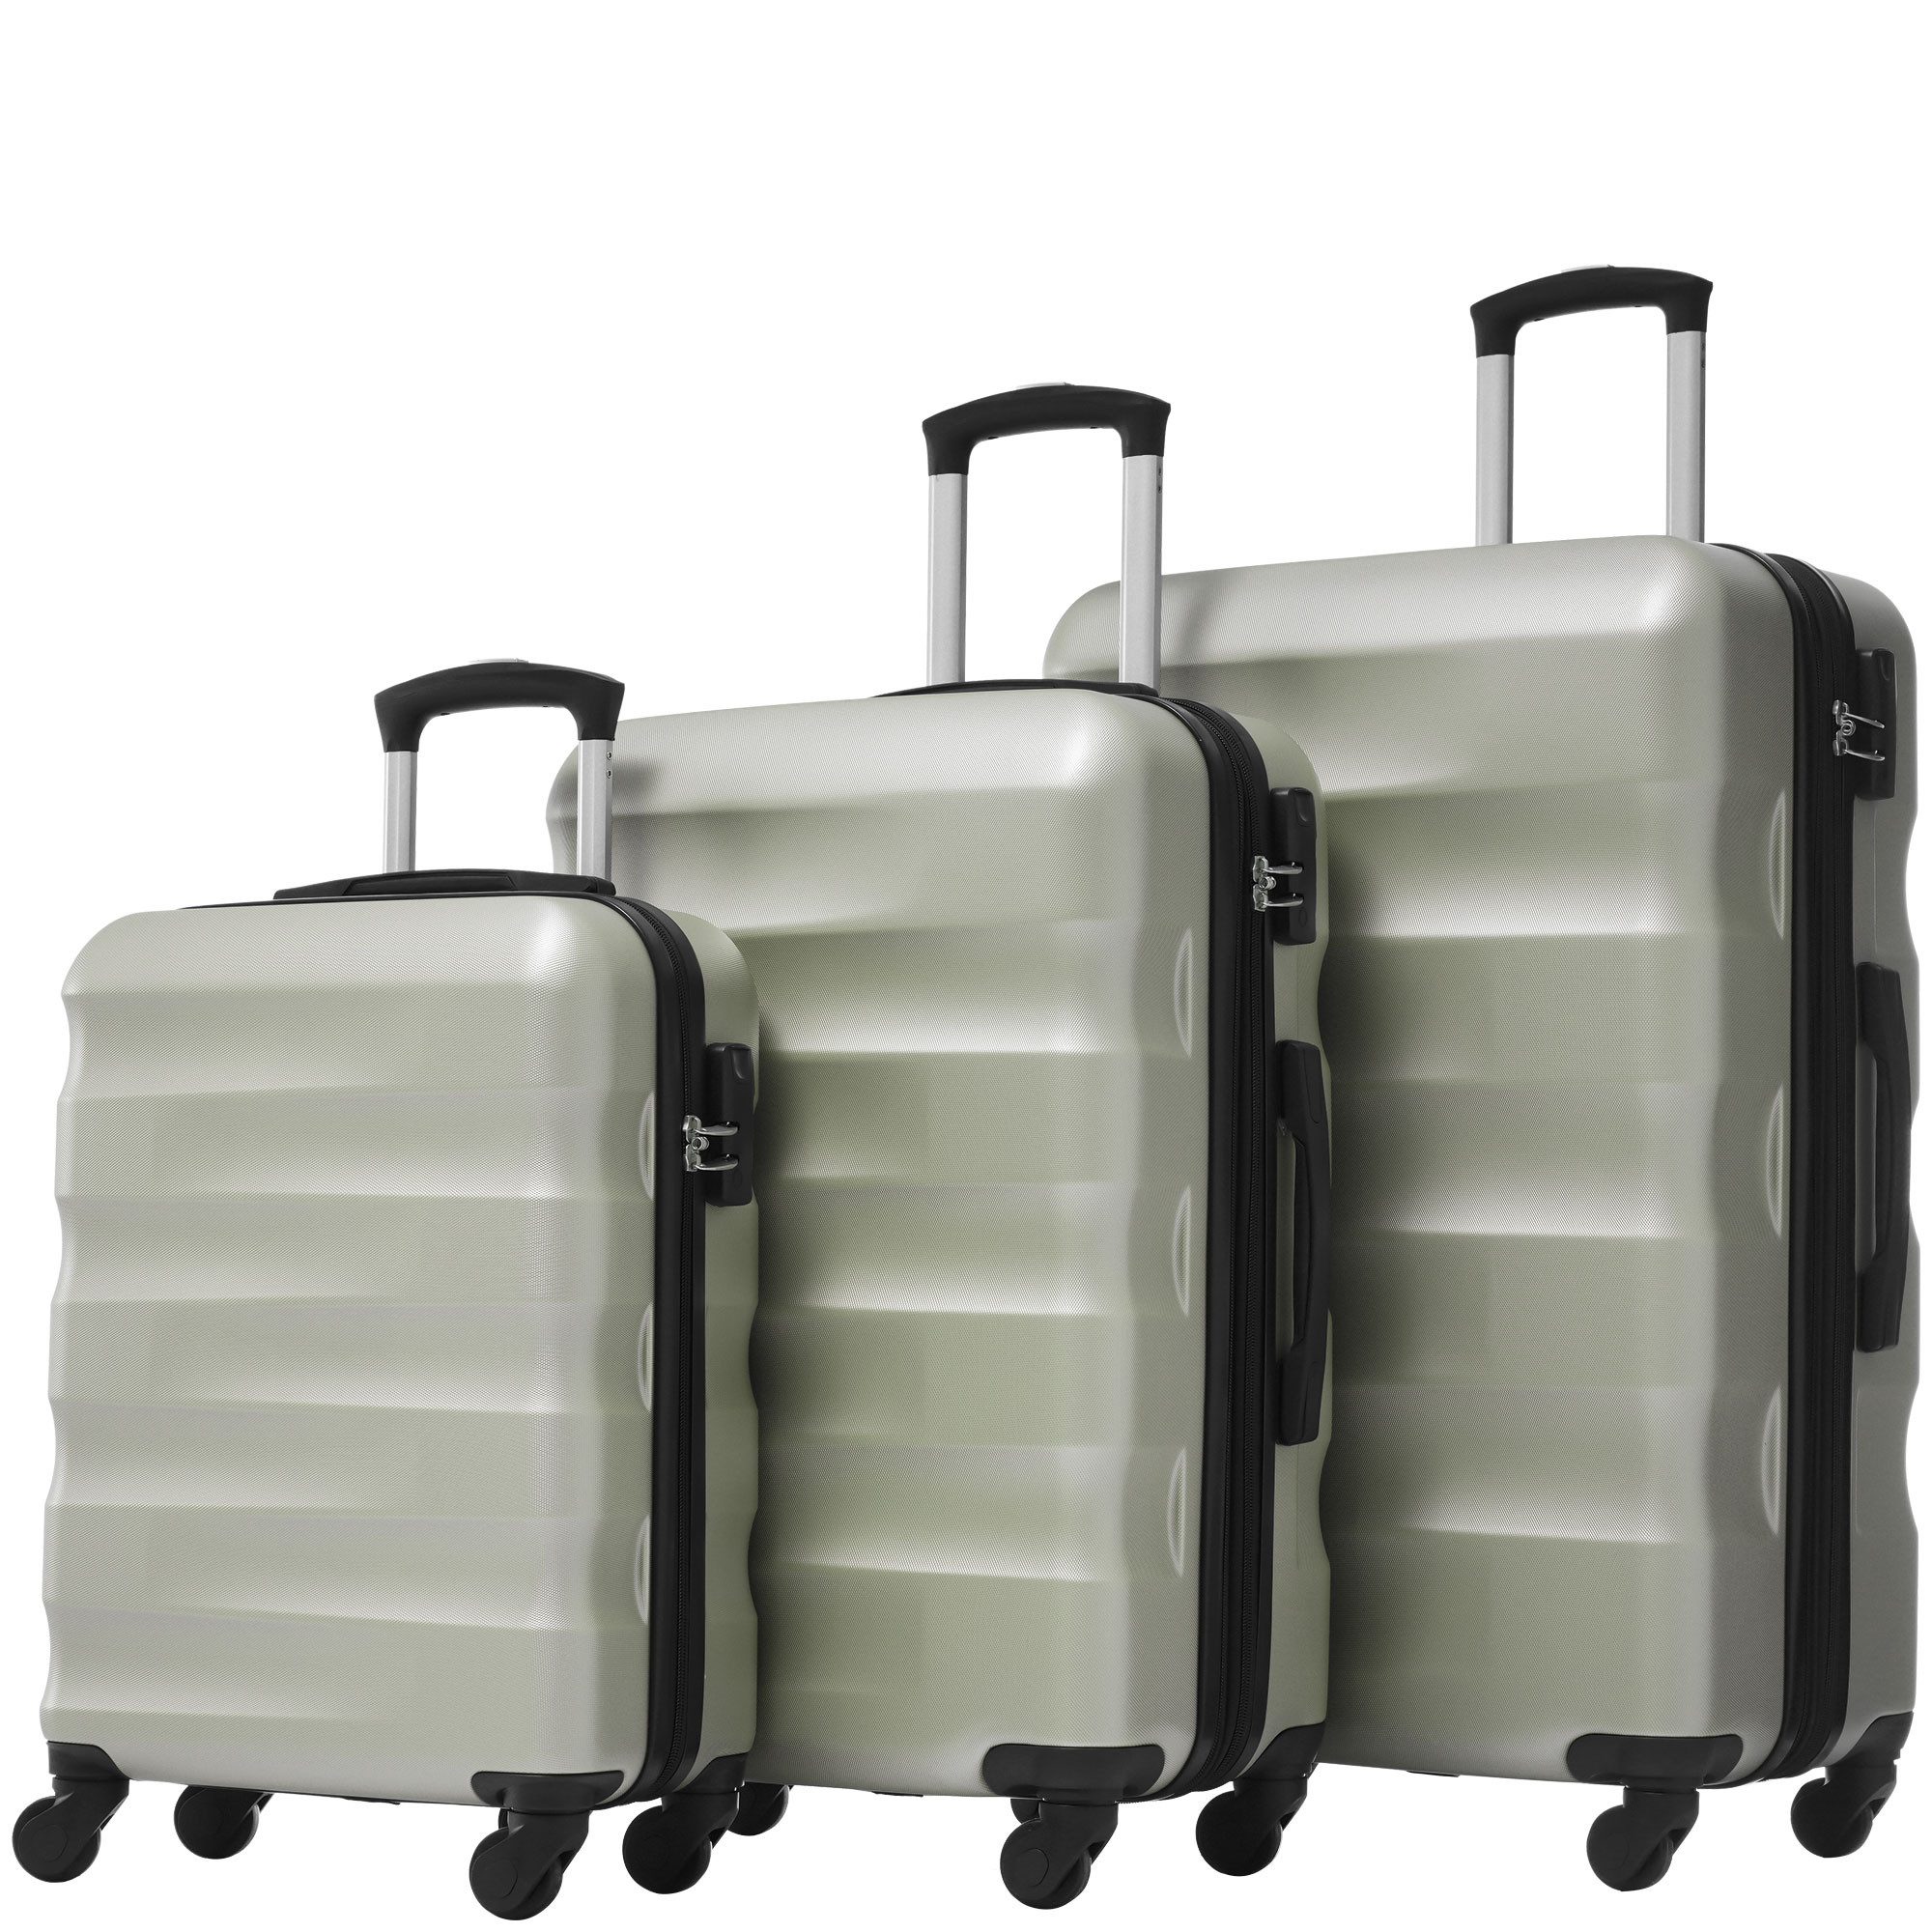 MODFU Kofferset Trolleyset, 4 Rollen, (Reisekoffer Handgepäck, Rollkoffer), aus hochwertigem PVC-Material